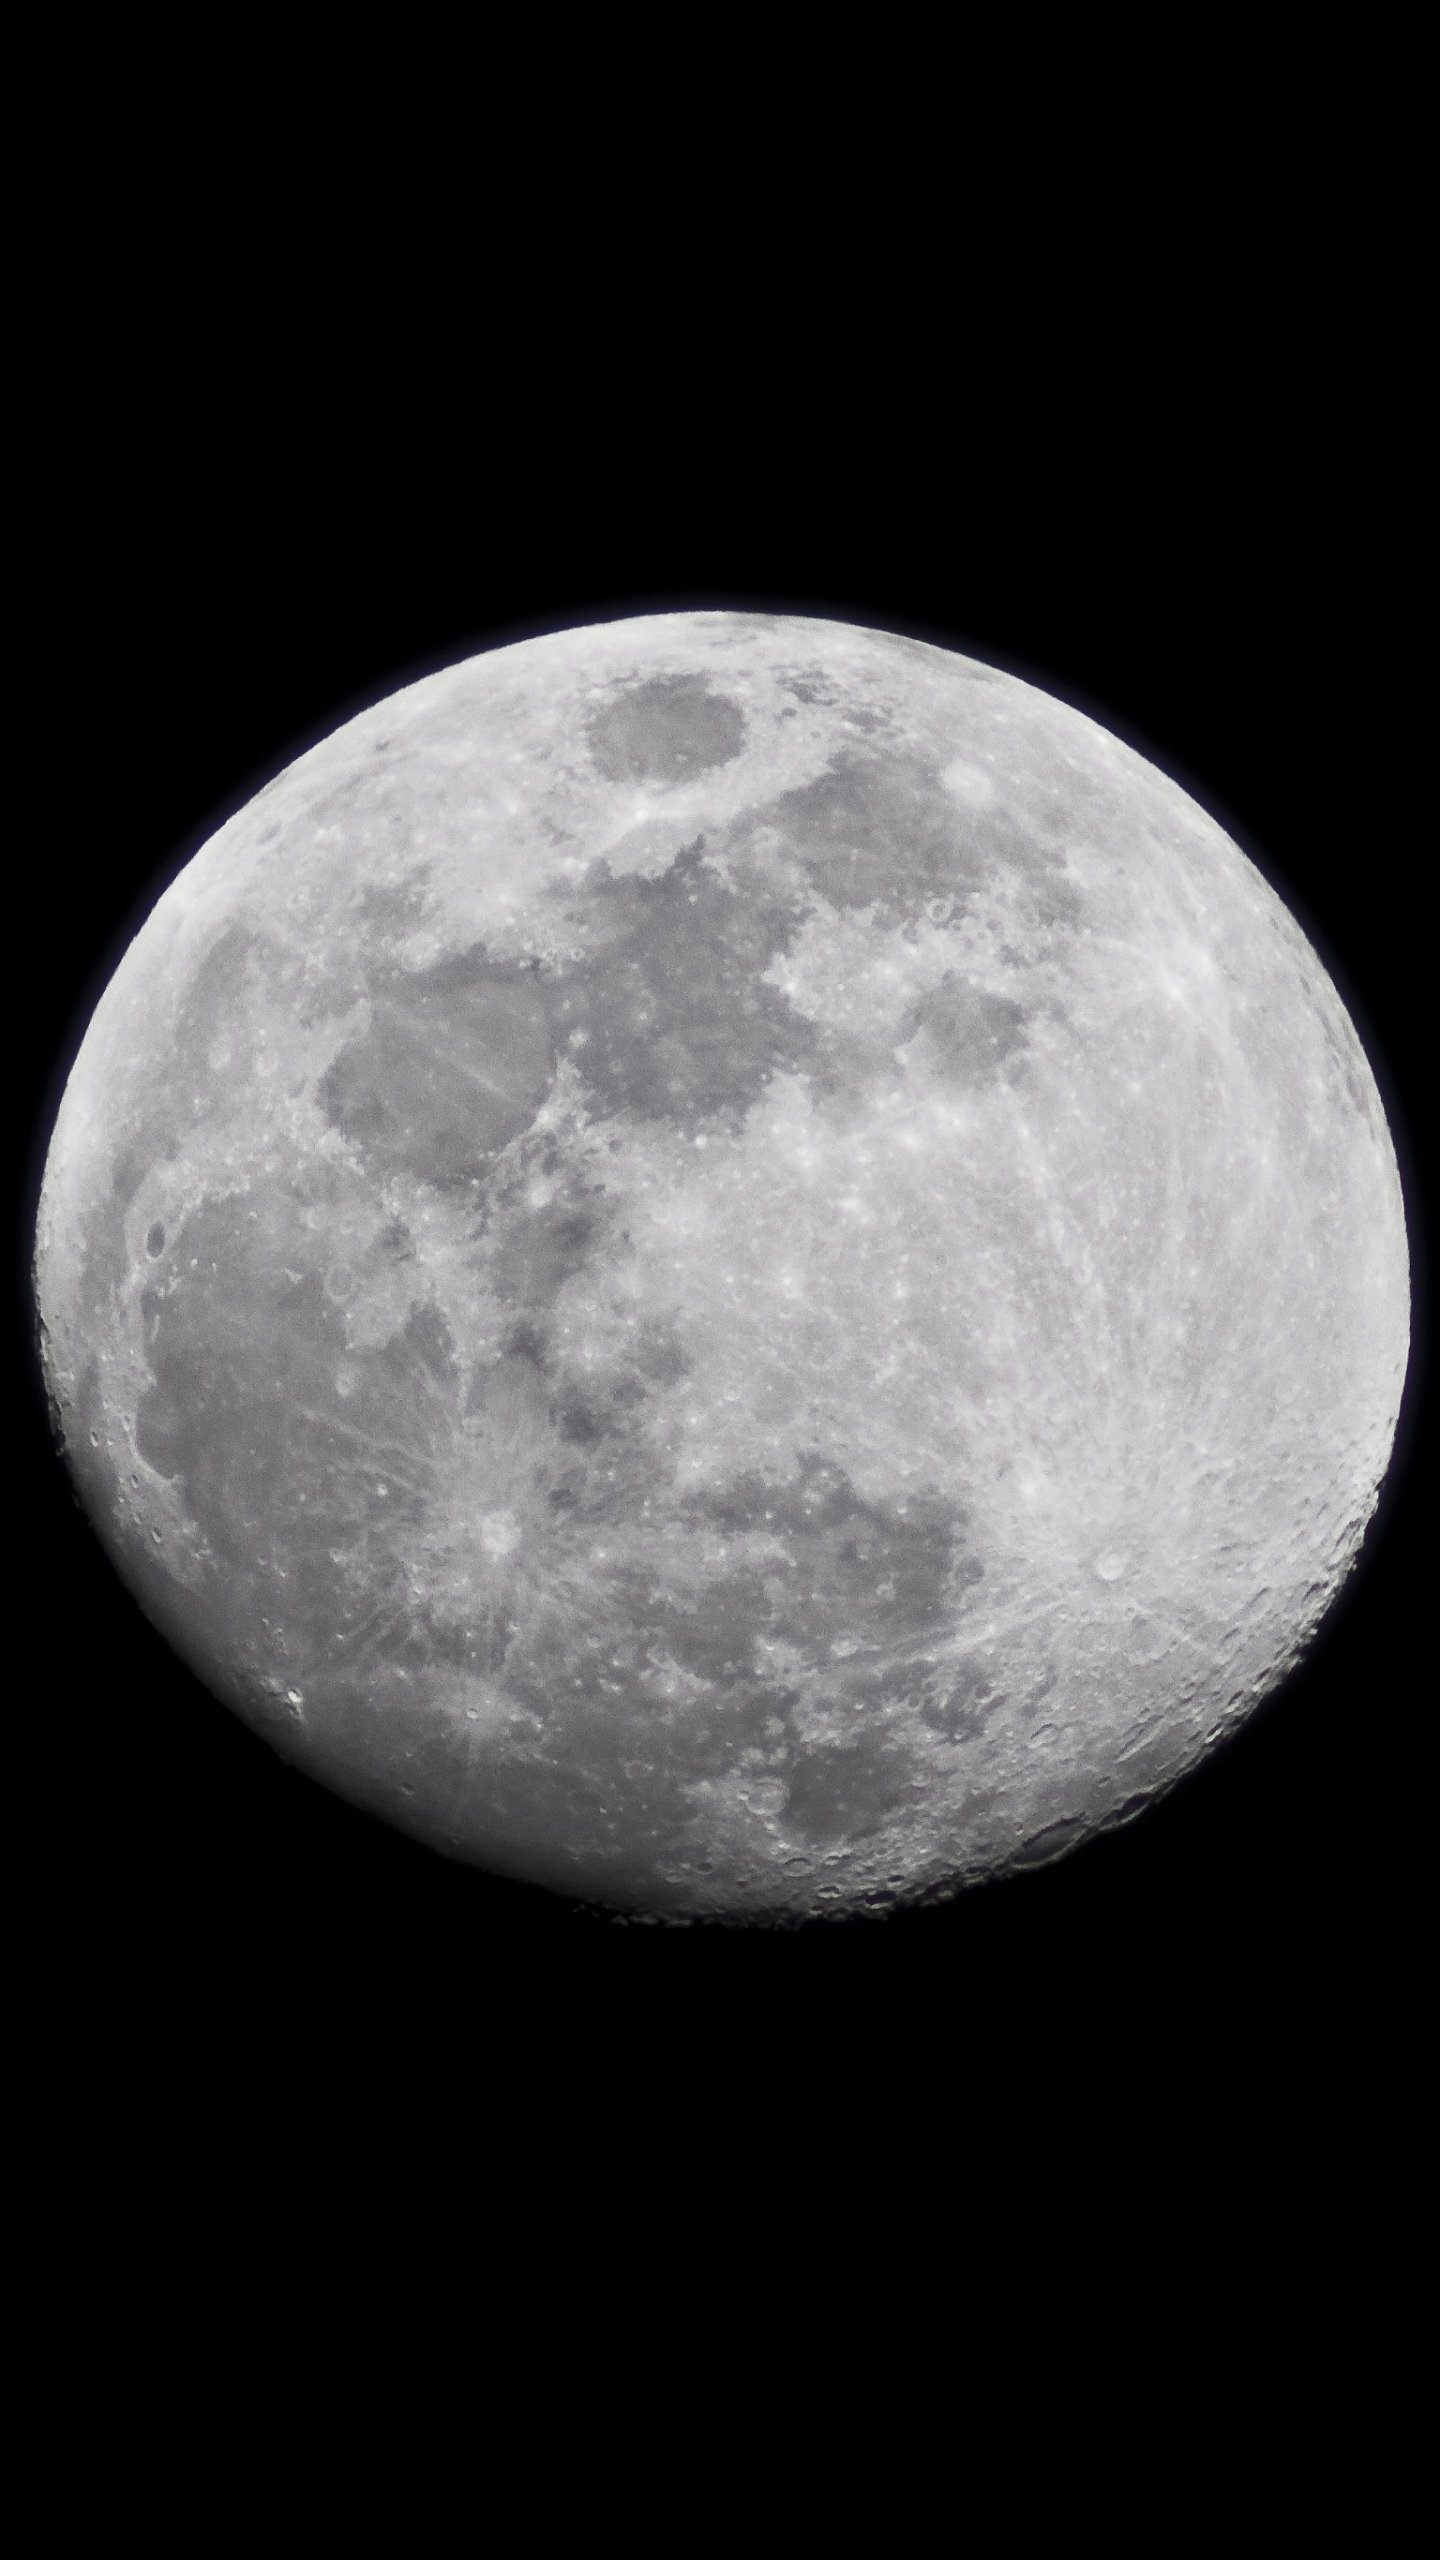 fond d'écran lune,lune,photographier,objet astronomique,photographie monochrome,noir et blanc